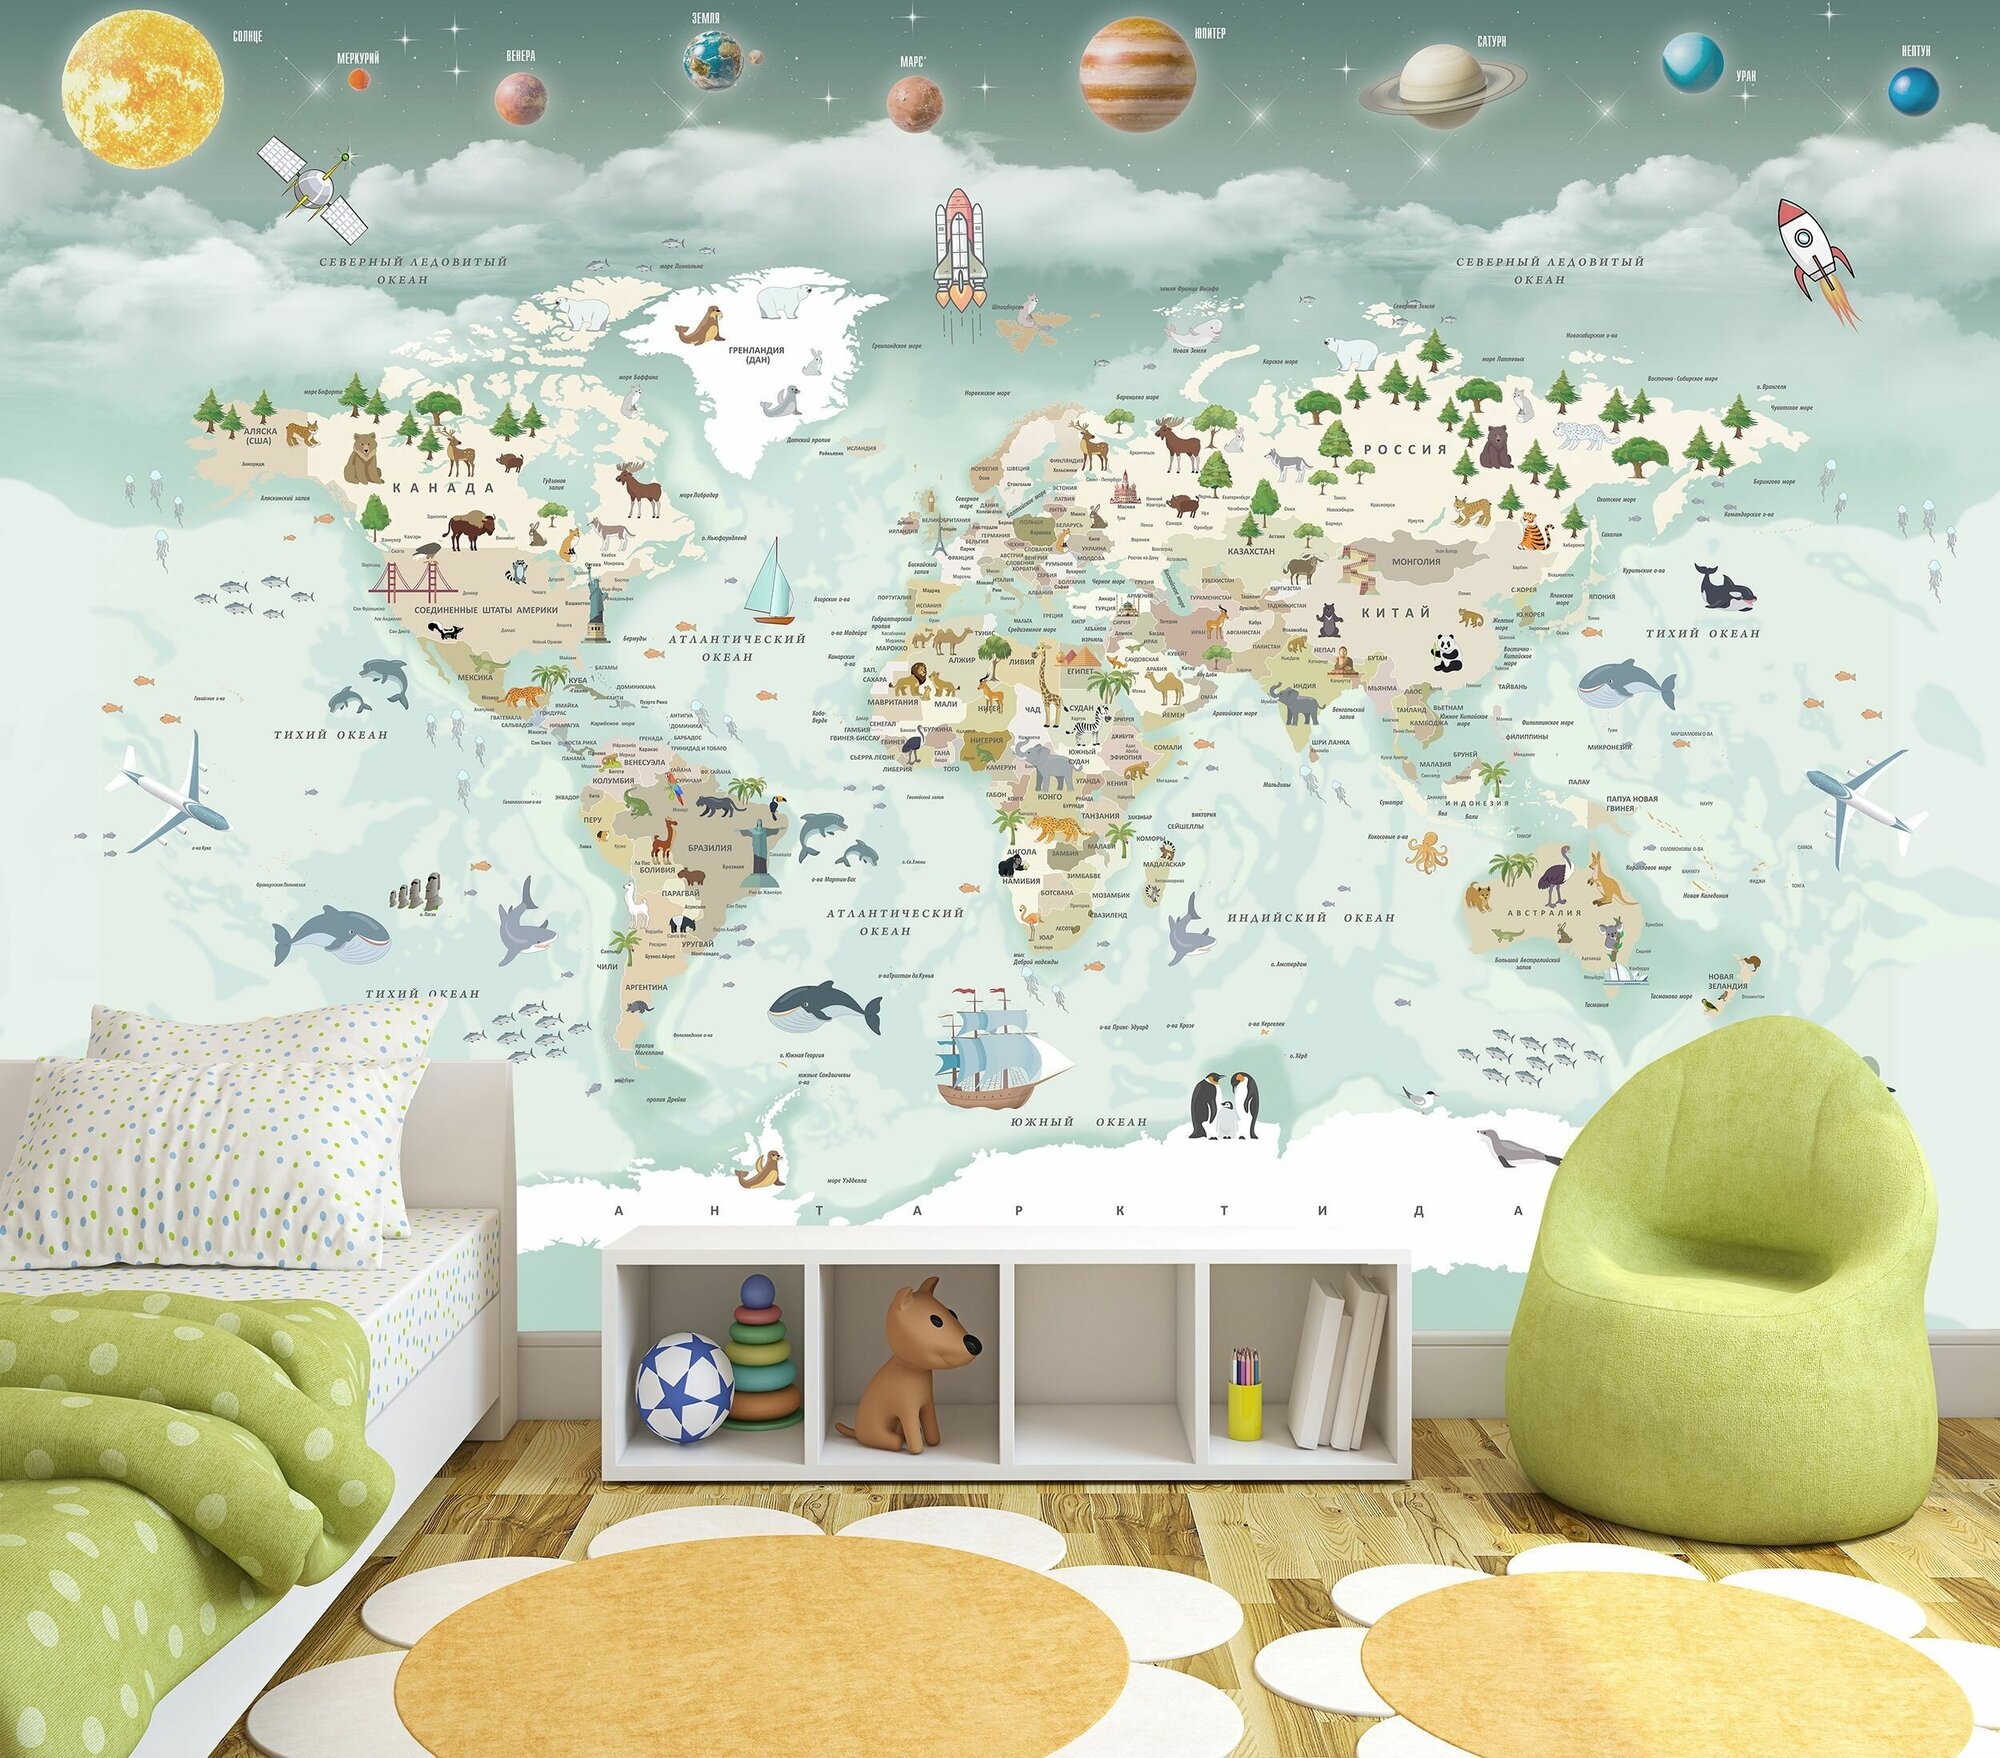 Фотообои флизелиновые 160х100см. на стену. Серия MAPS ARTDELUXE. Детская карта мира и планеты. Обои дизайнерские, эксклюзивные для детской комнаты.